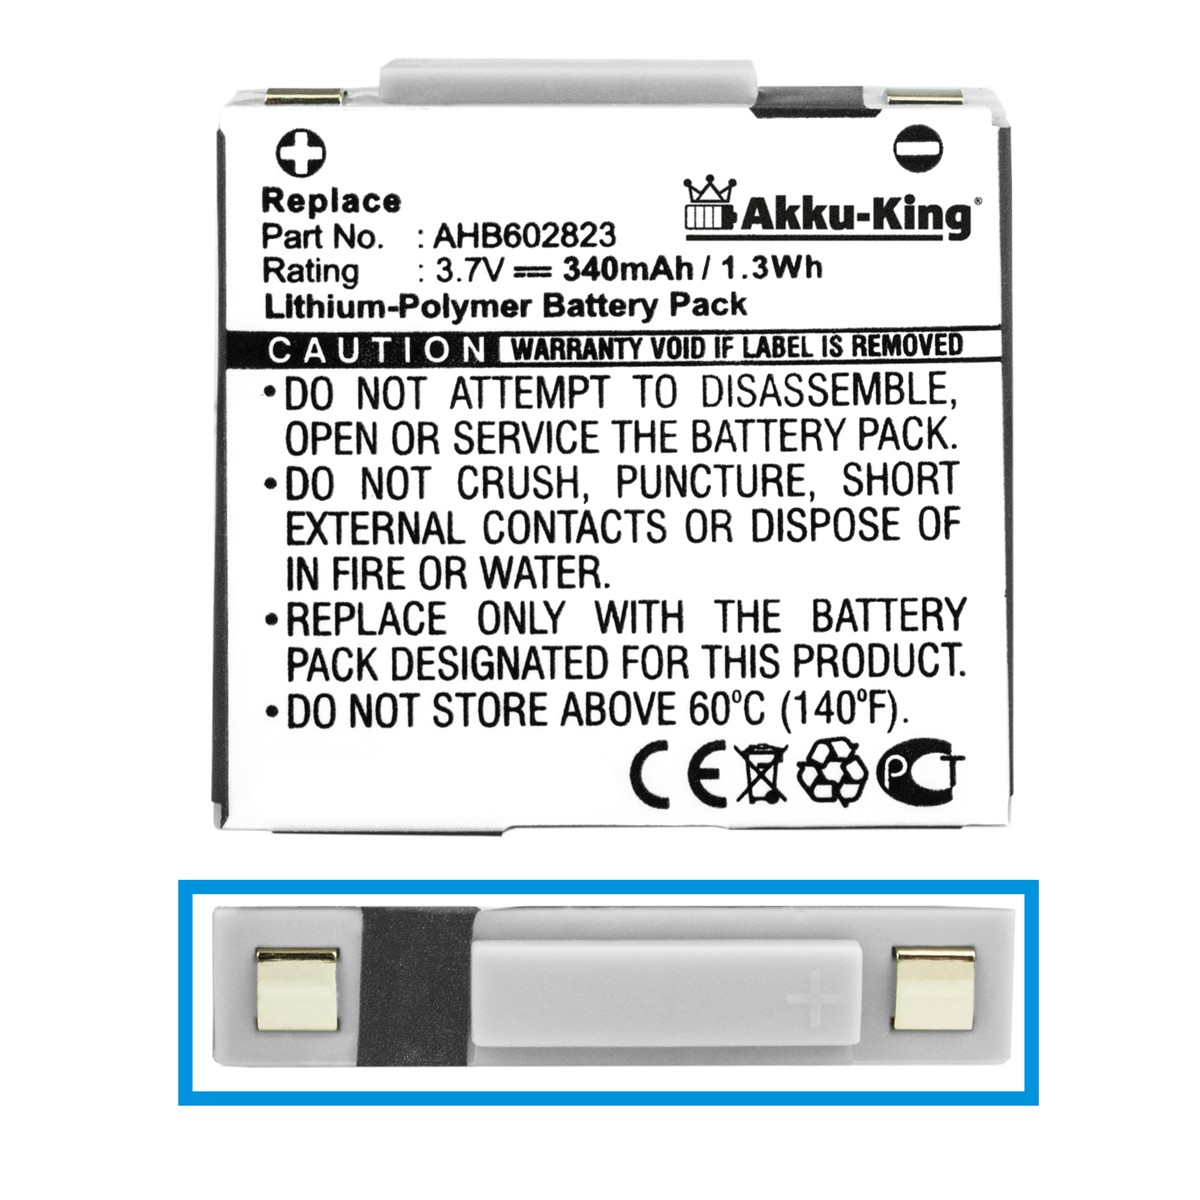 AKKU-KING Akku 3.7 Jabra AHB602823 Volt, Li-Polymer Geräte-Akku, kompatibel 340mAh mit